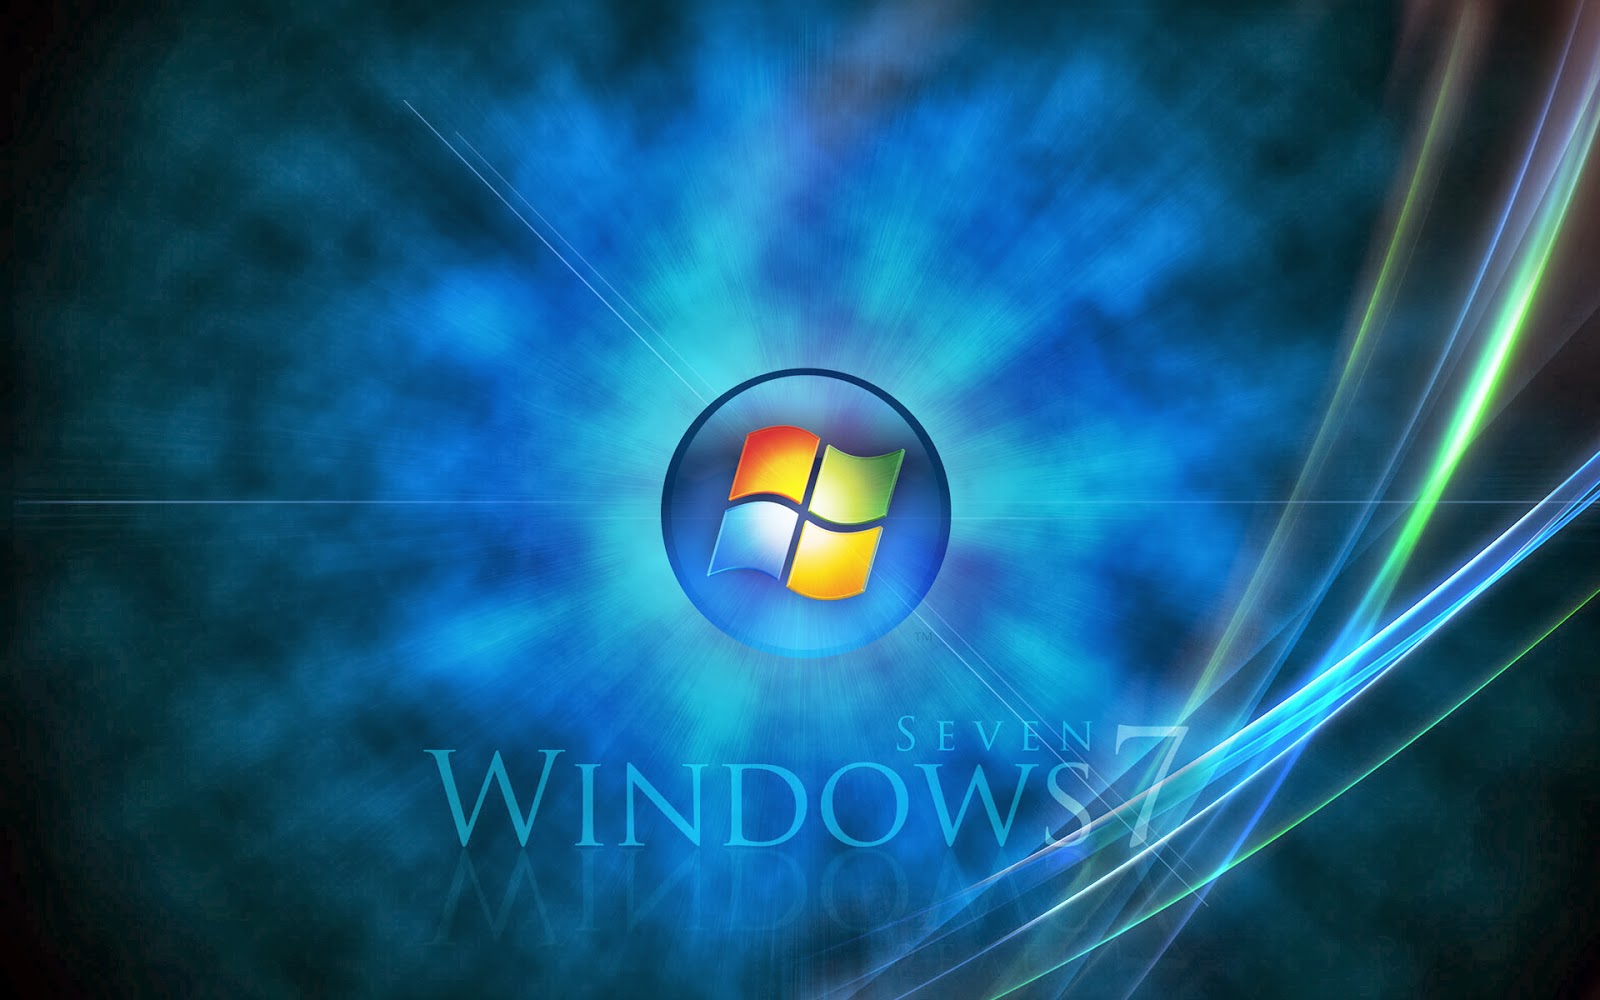 Windows 7 Wallpapers Part 2 - Gambar Menarik